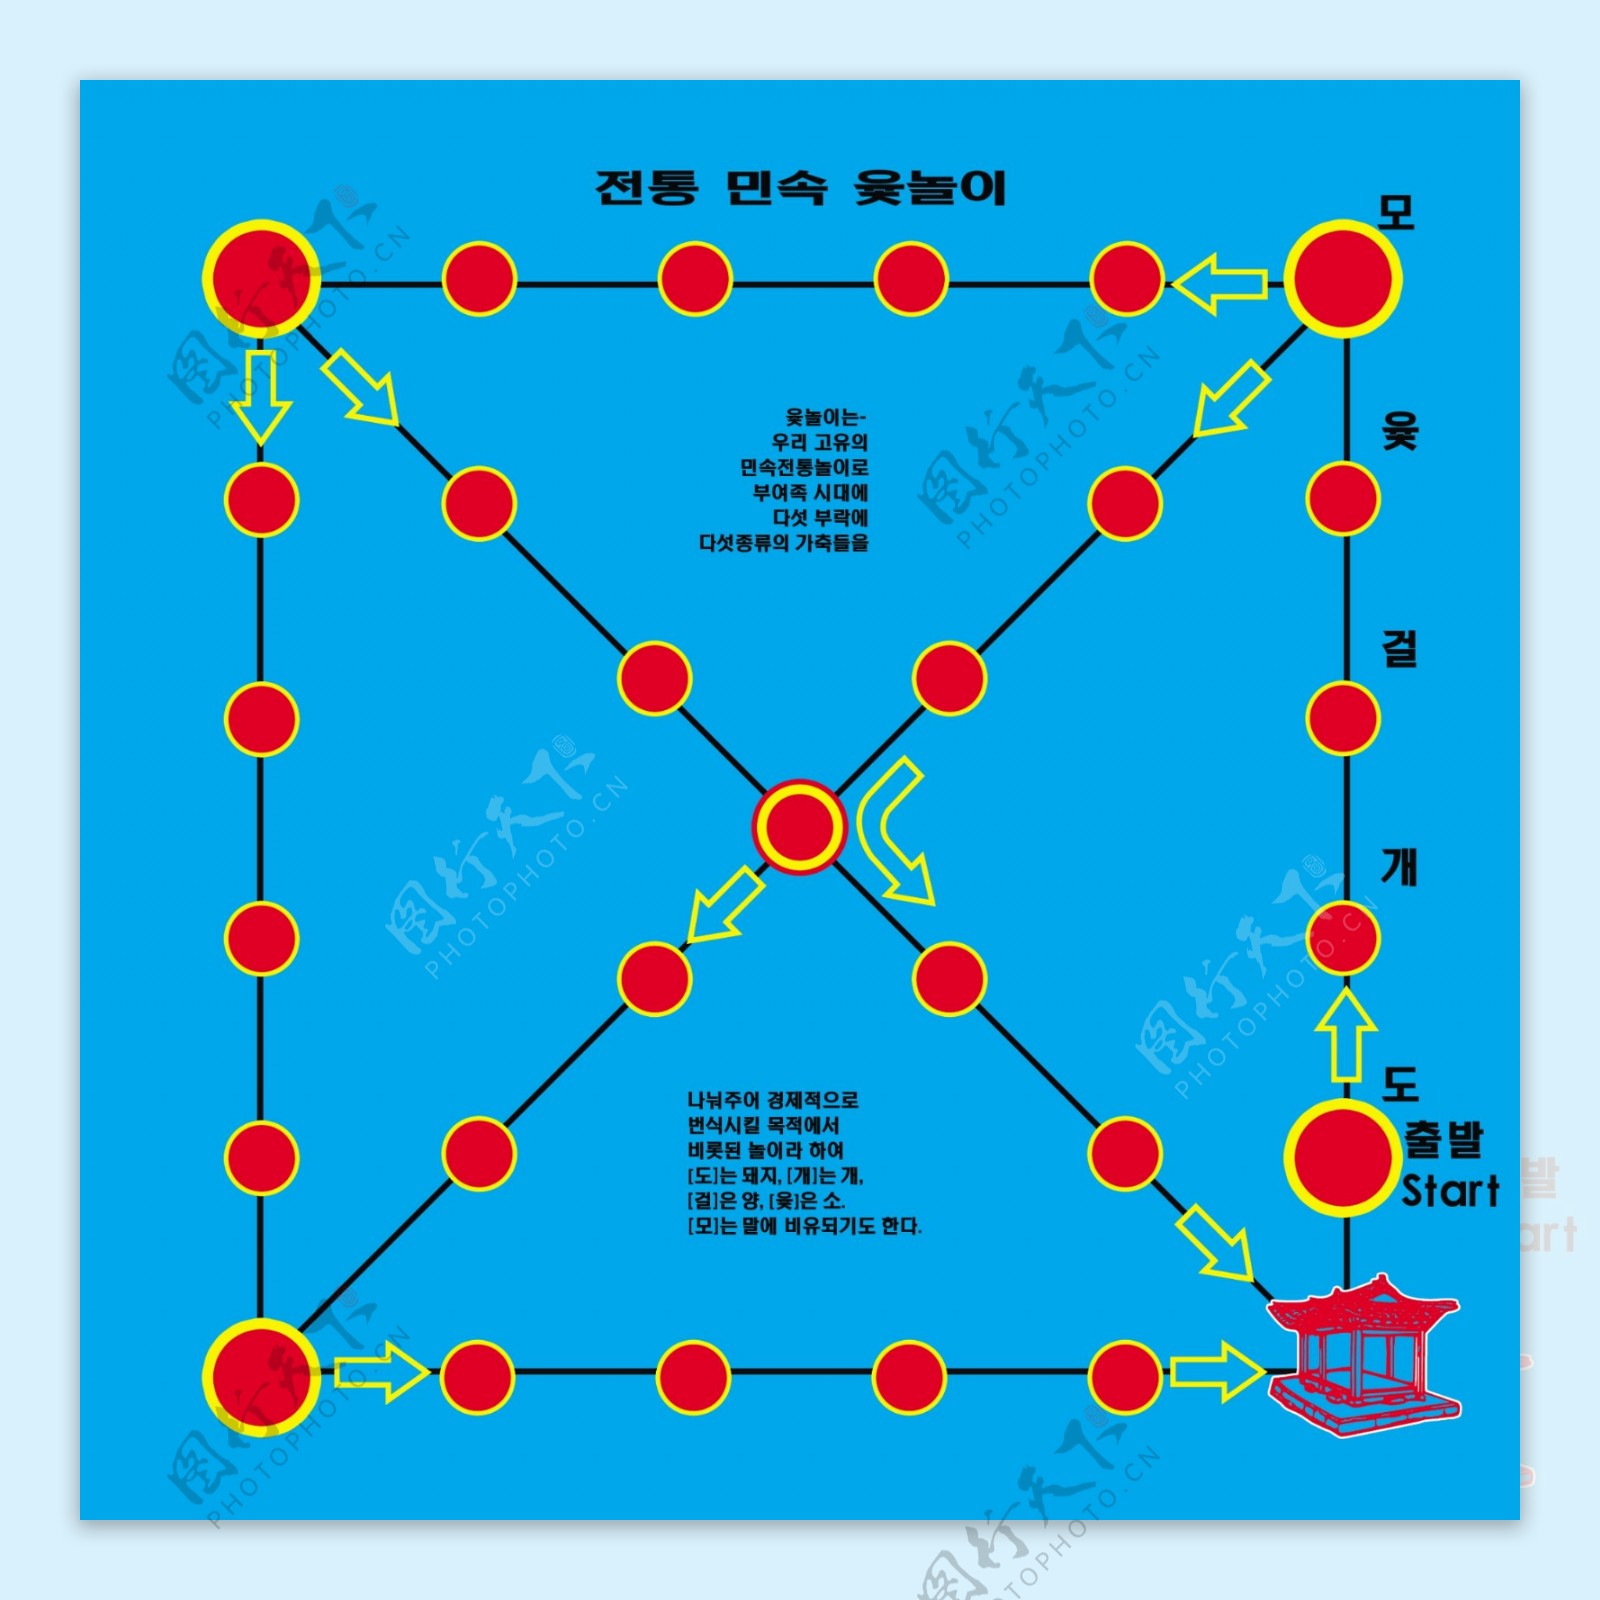 朝鲜族传统游戏棋盘